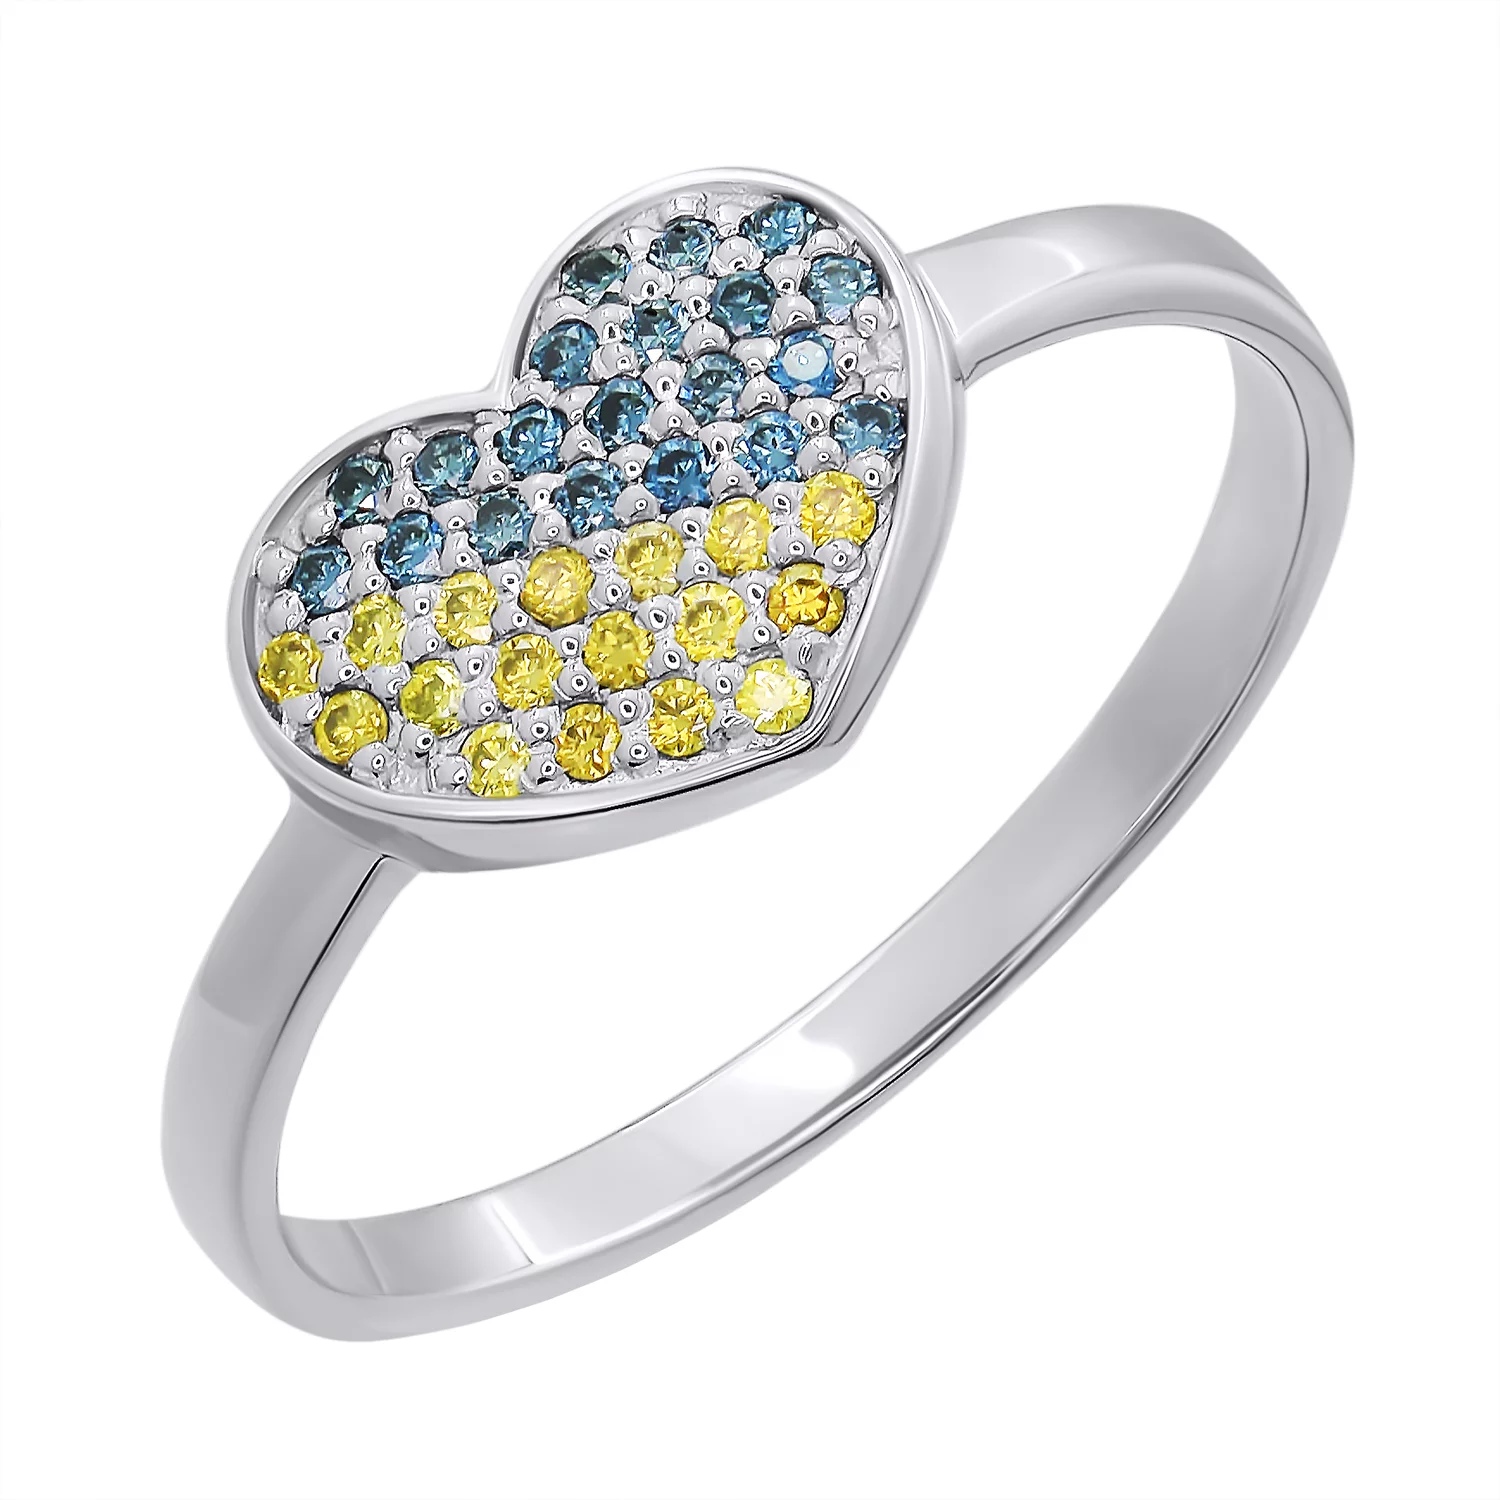 Кольцо из белого золота с бриллиантами Сердце Украина. Артикул 1190150202/10: цена, отзывы, фото – купить в интернет-магазине AURUM